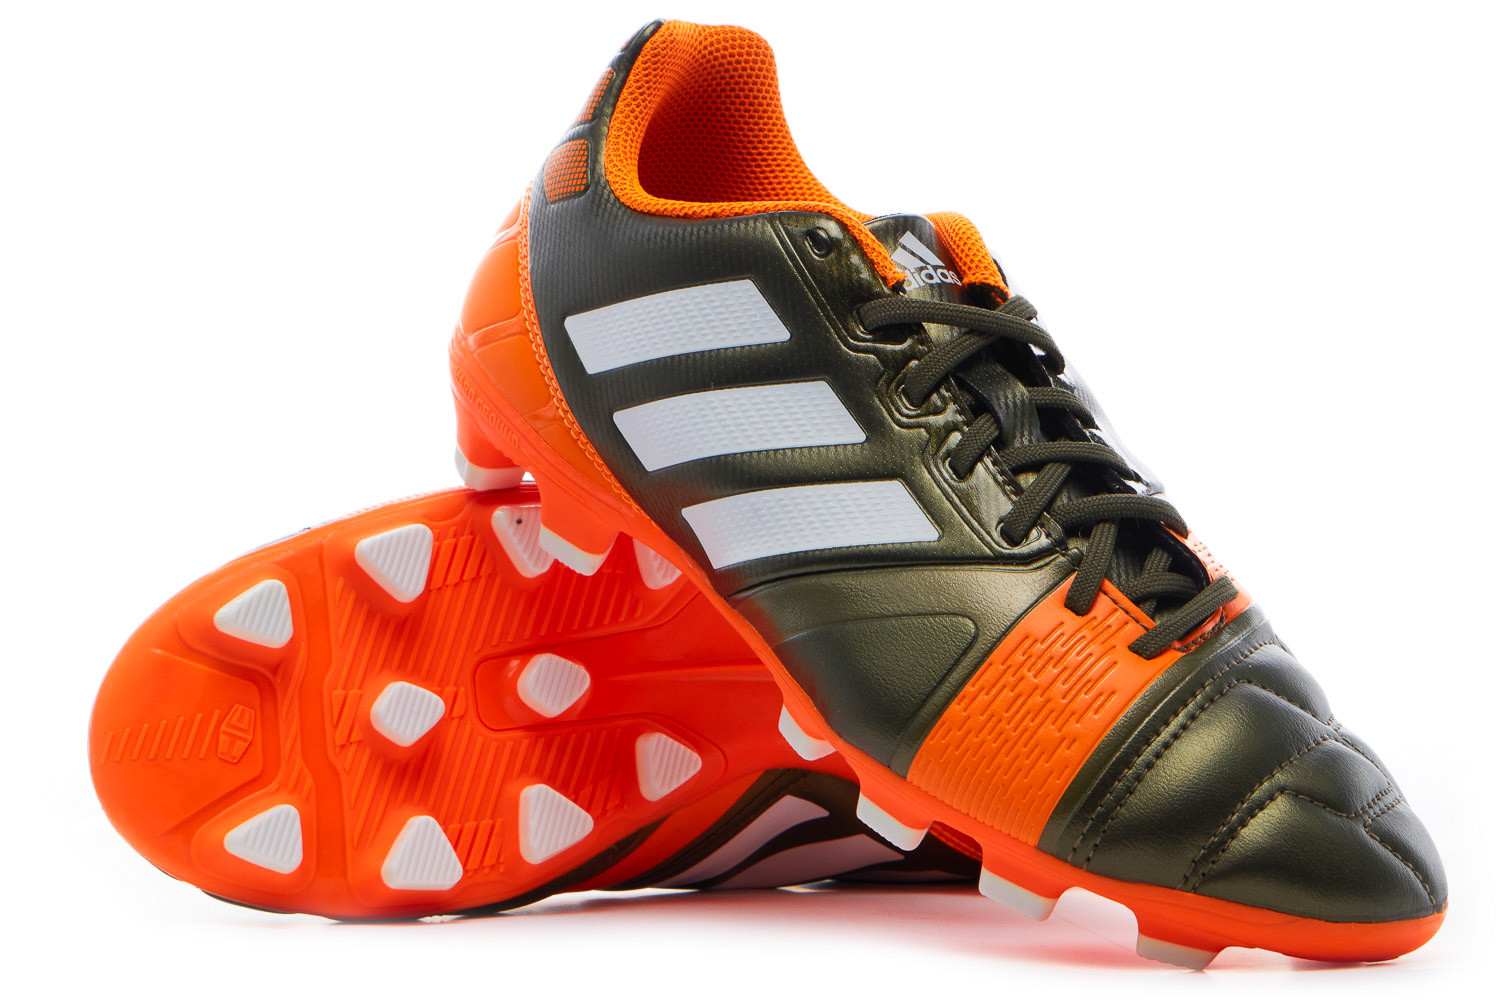 Bekwaamheid Bachelor opleiding evenaar 2014 adidas Nitrocharge 3.0 TRX Football Boots *In Box* HG 7